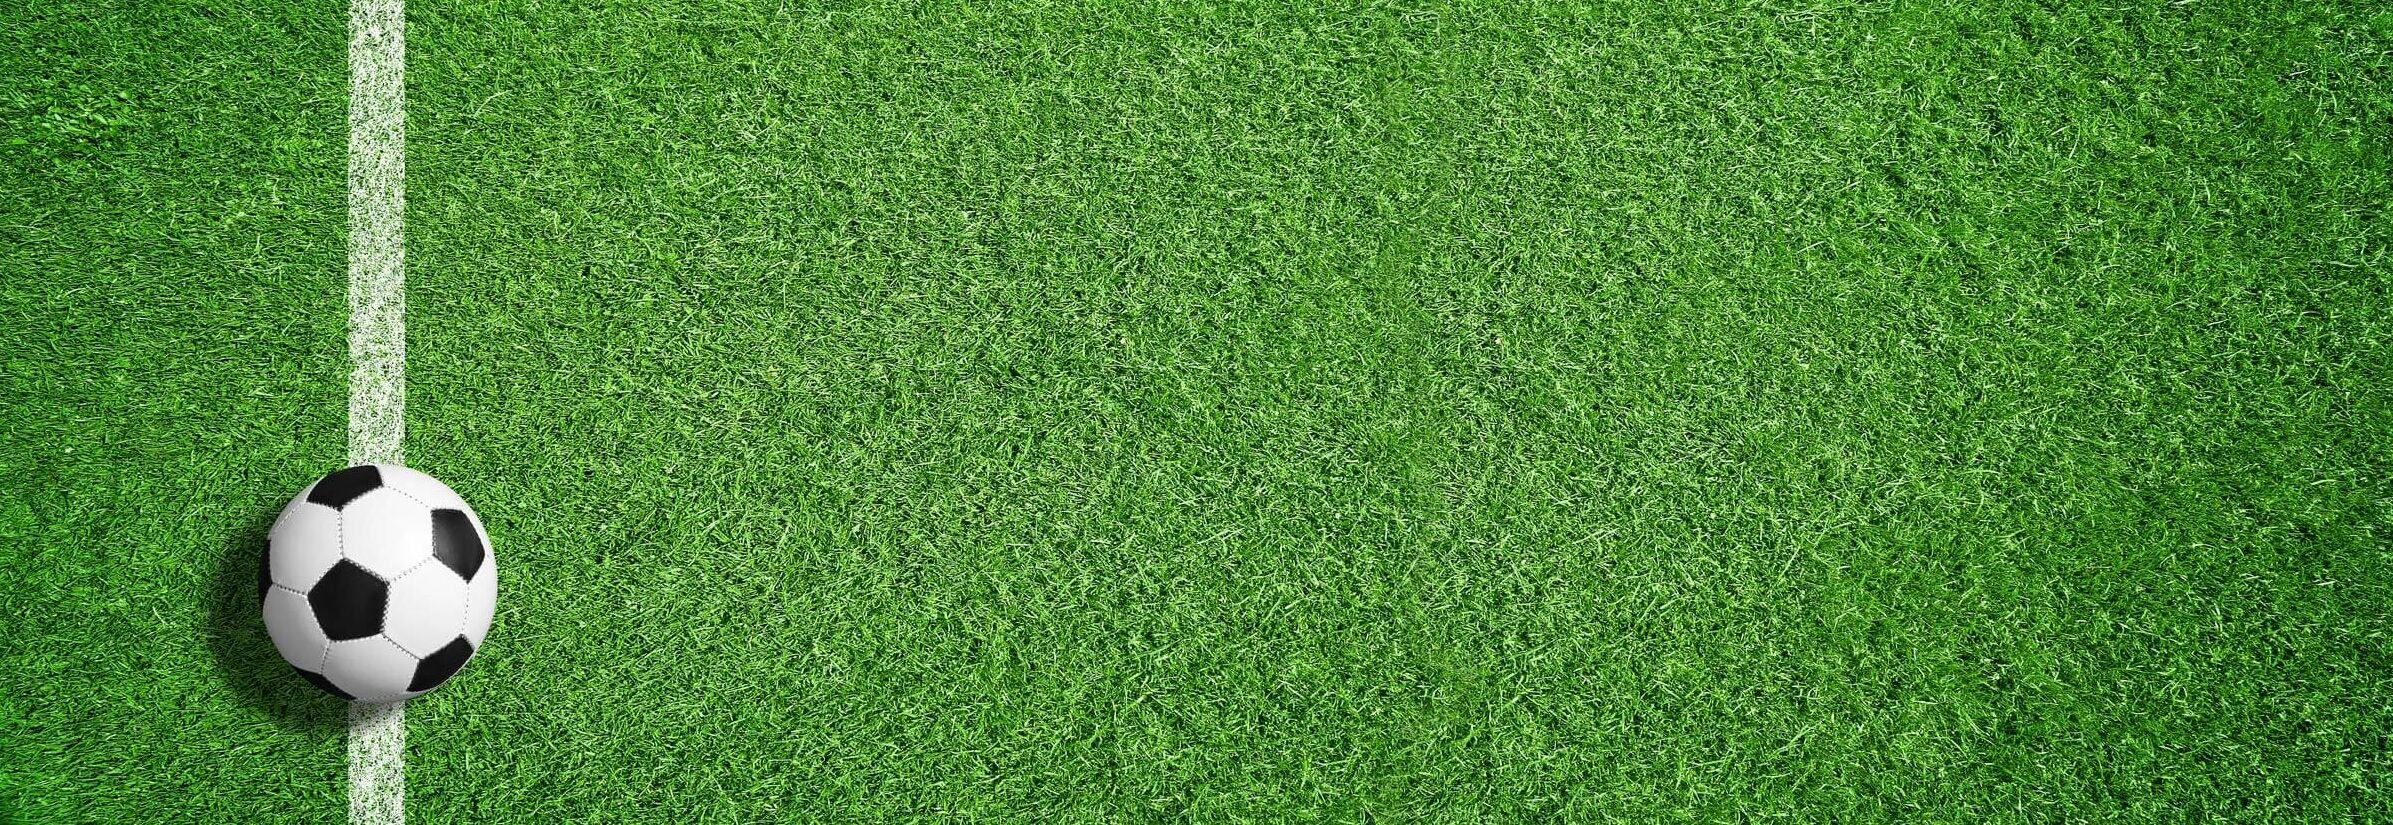 Fussball auf der Linie liegend, grüner Raser im Hintergrund